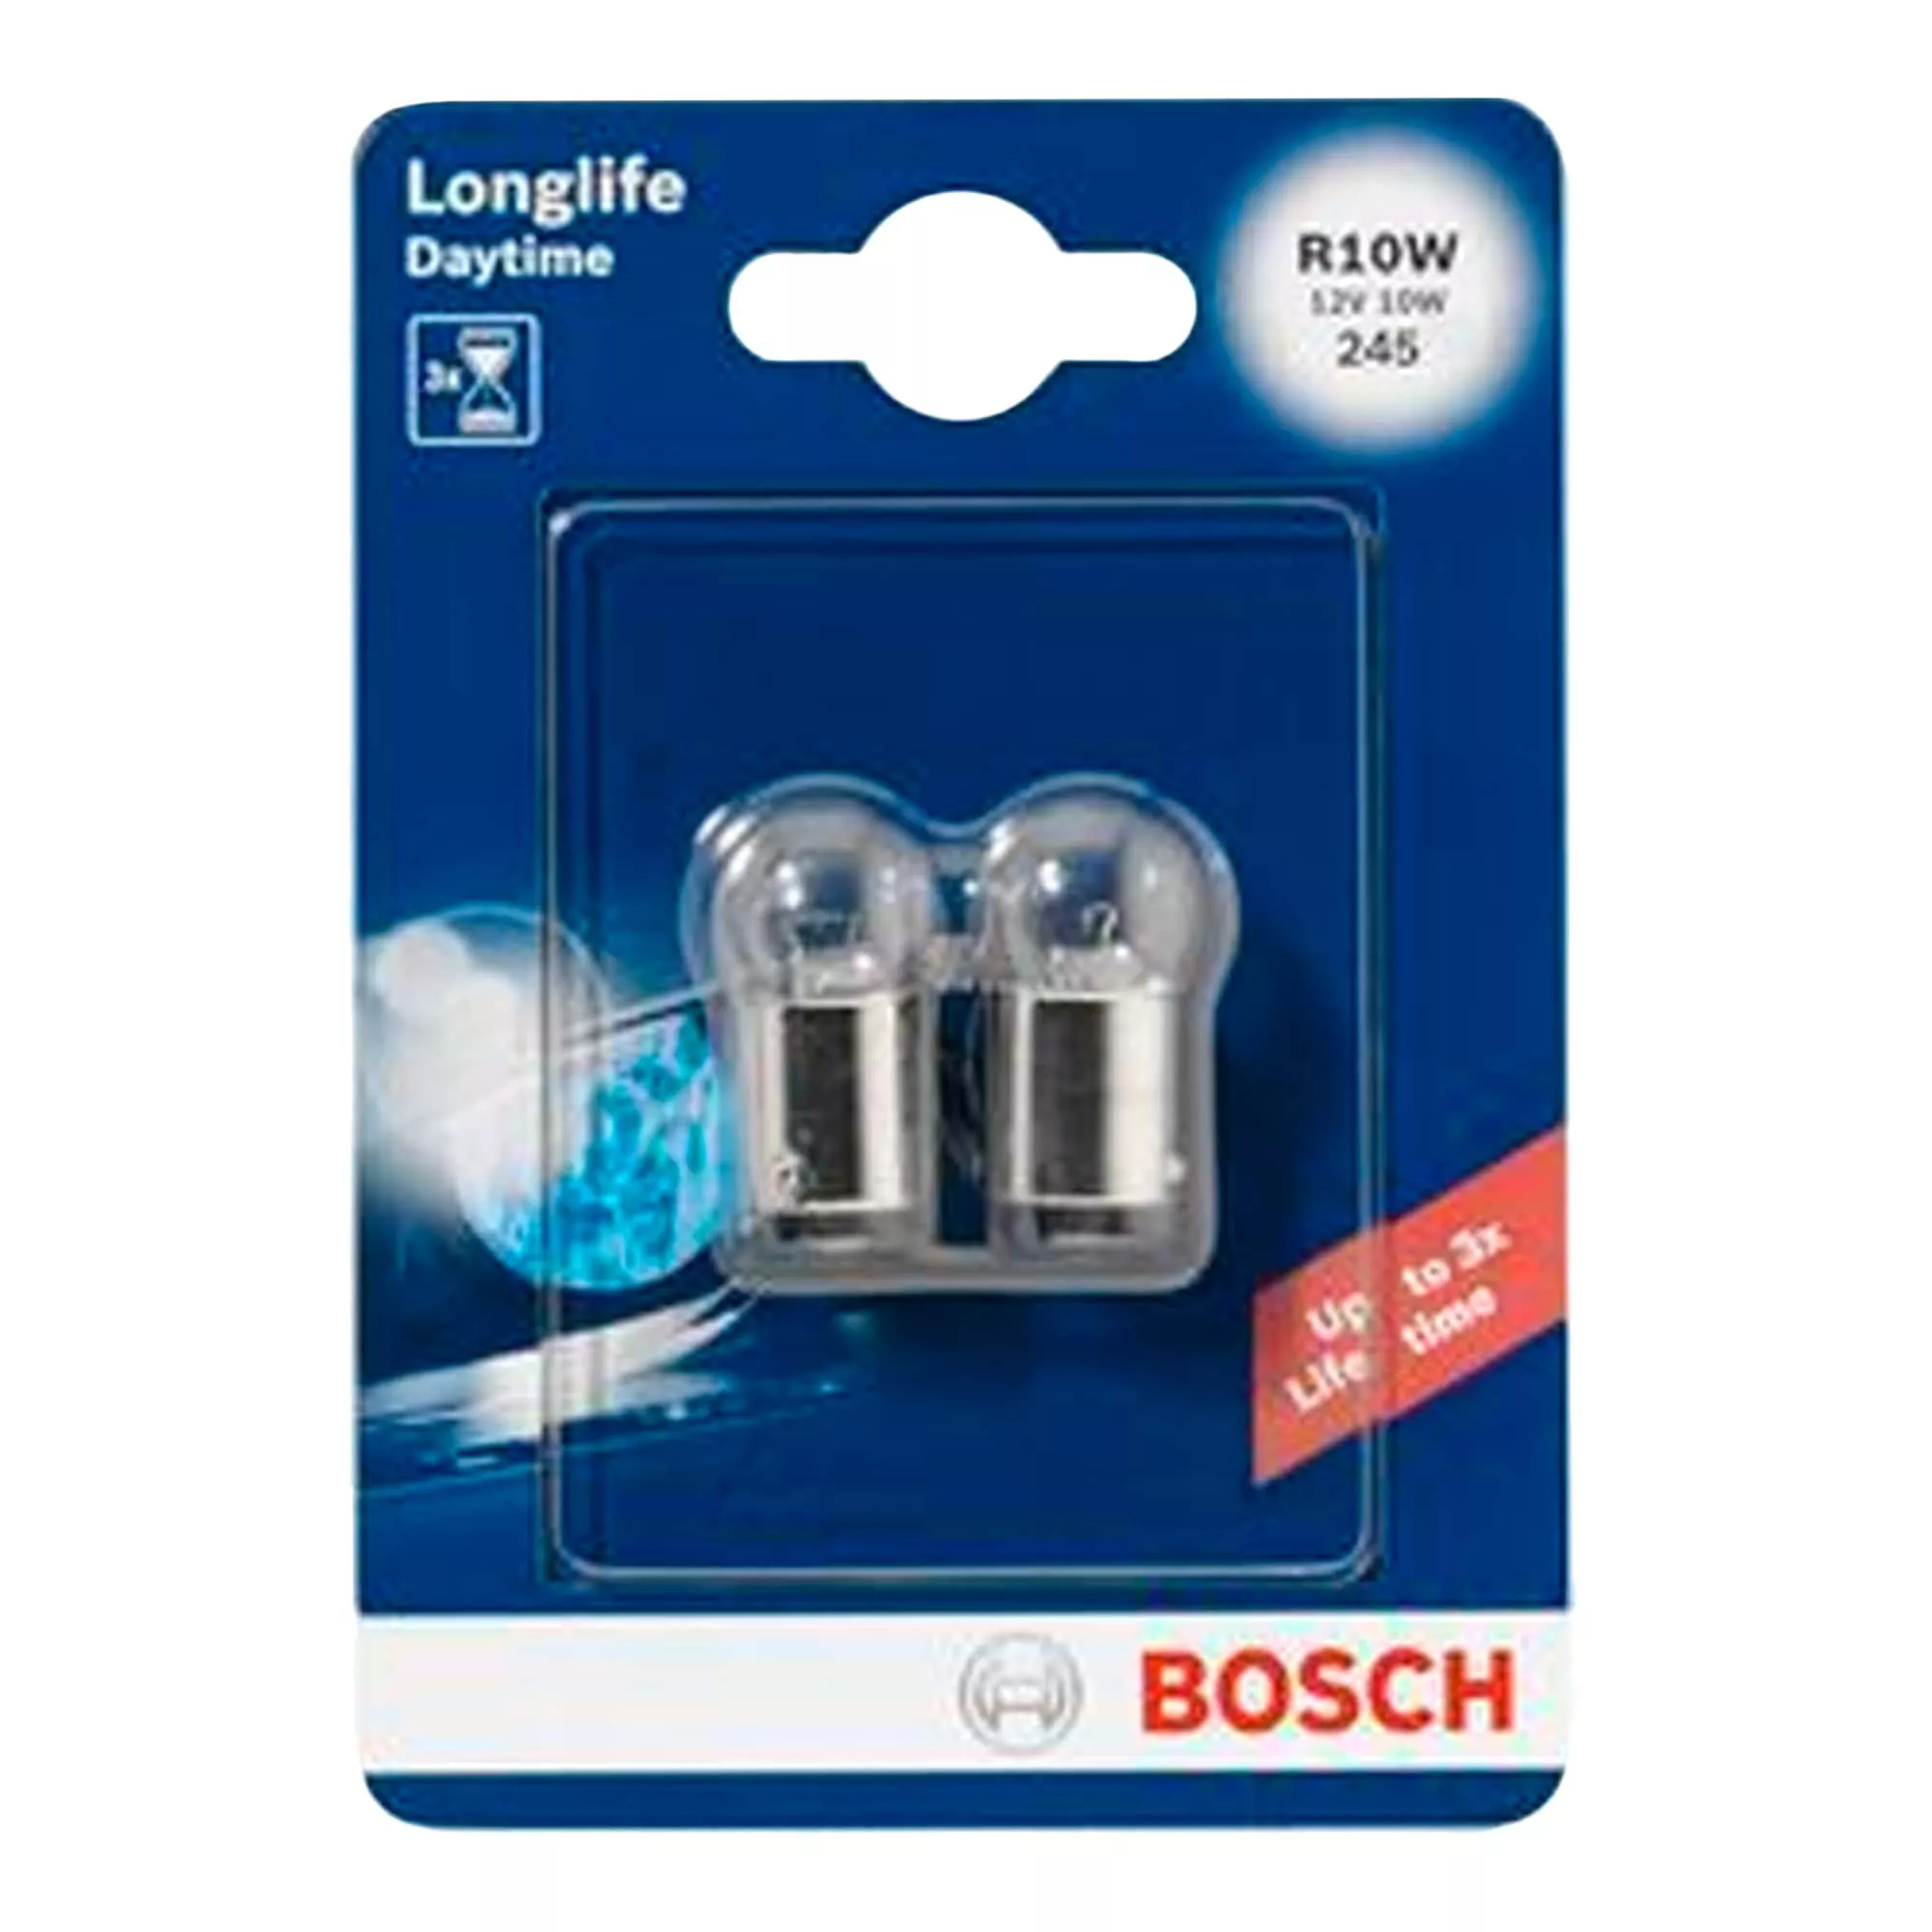 Лампа Bosch Longlife Daytime R10W 12V 10W 1 987 301 059